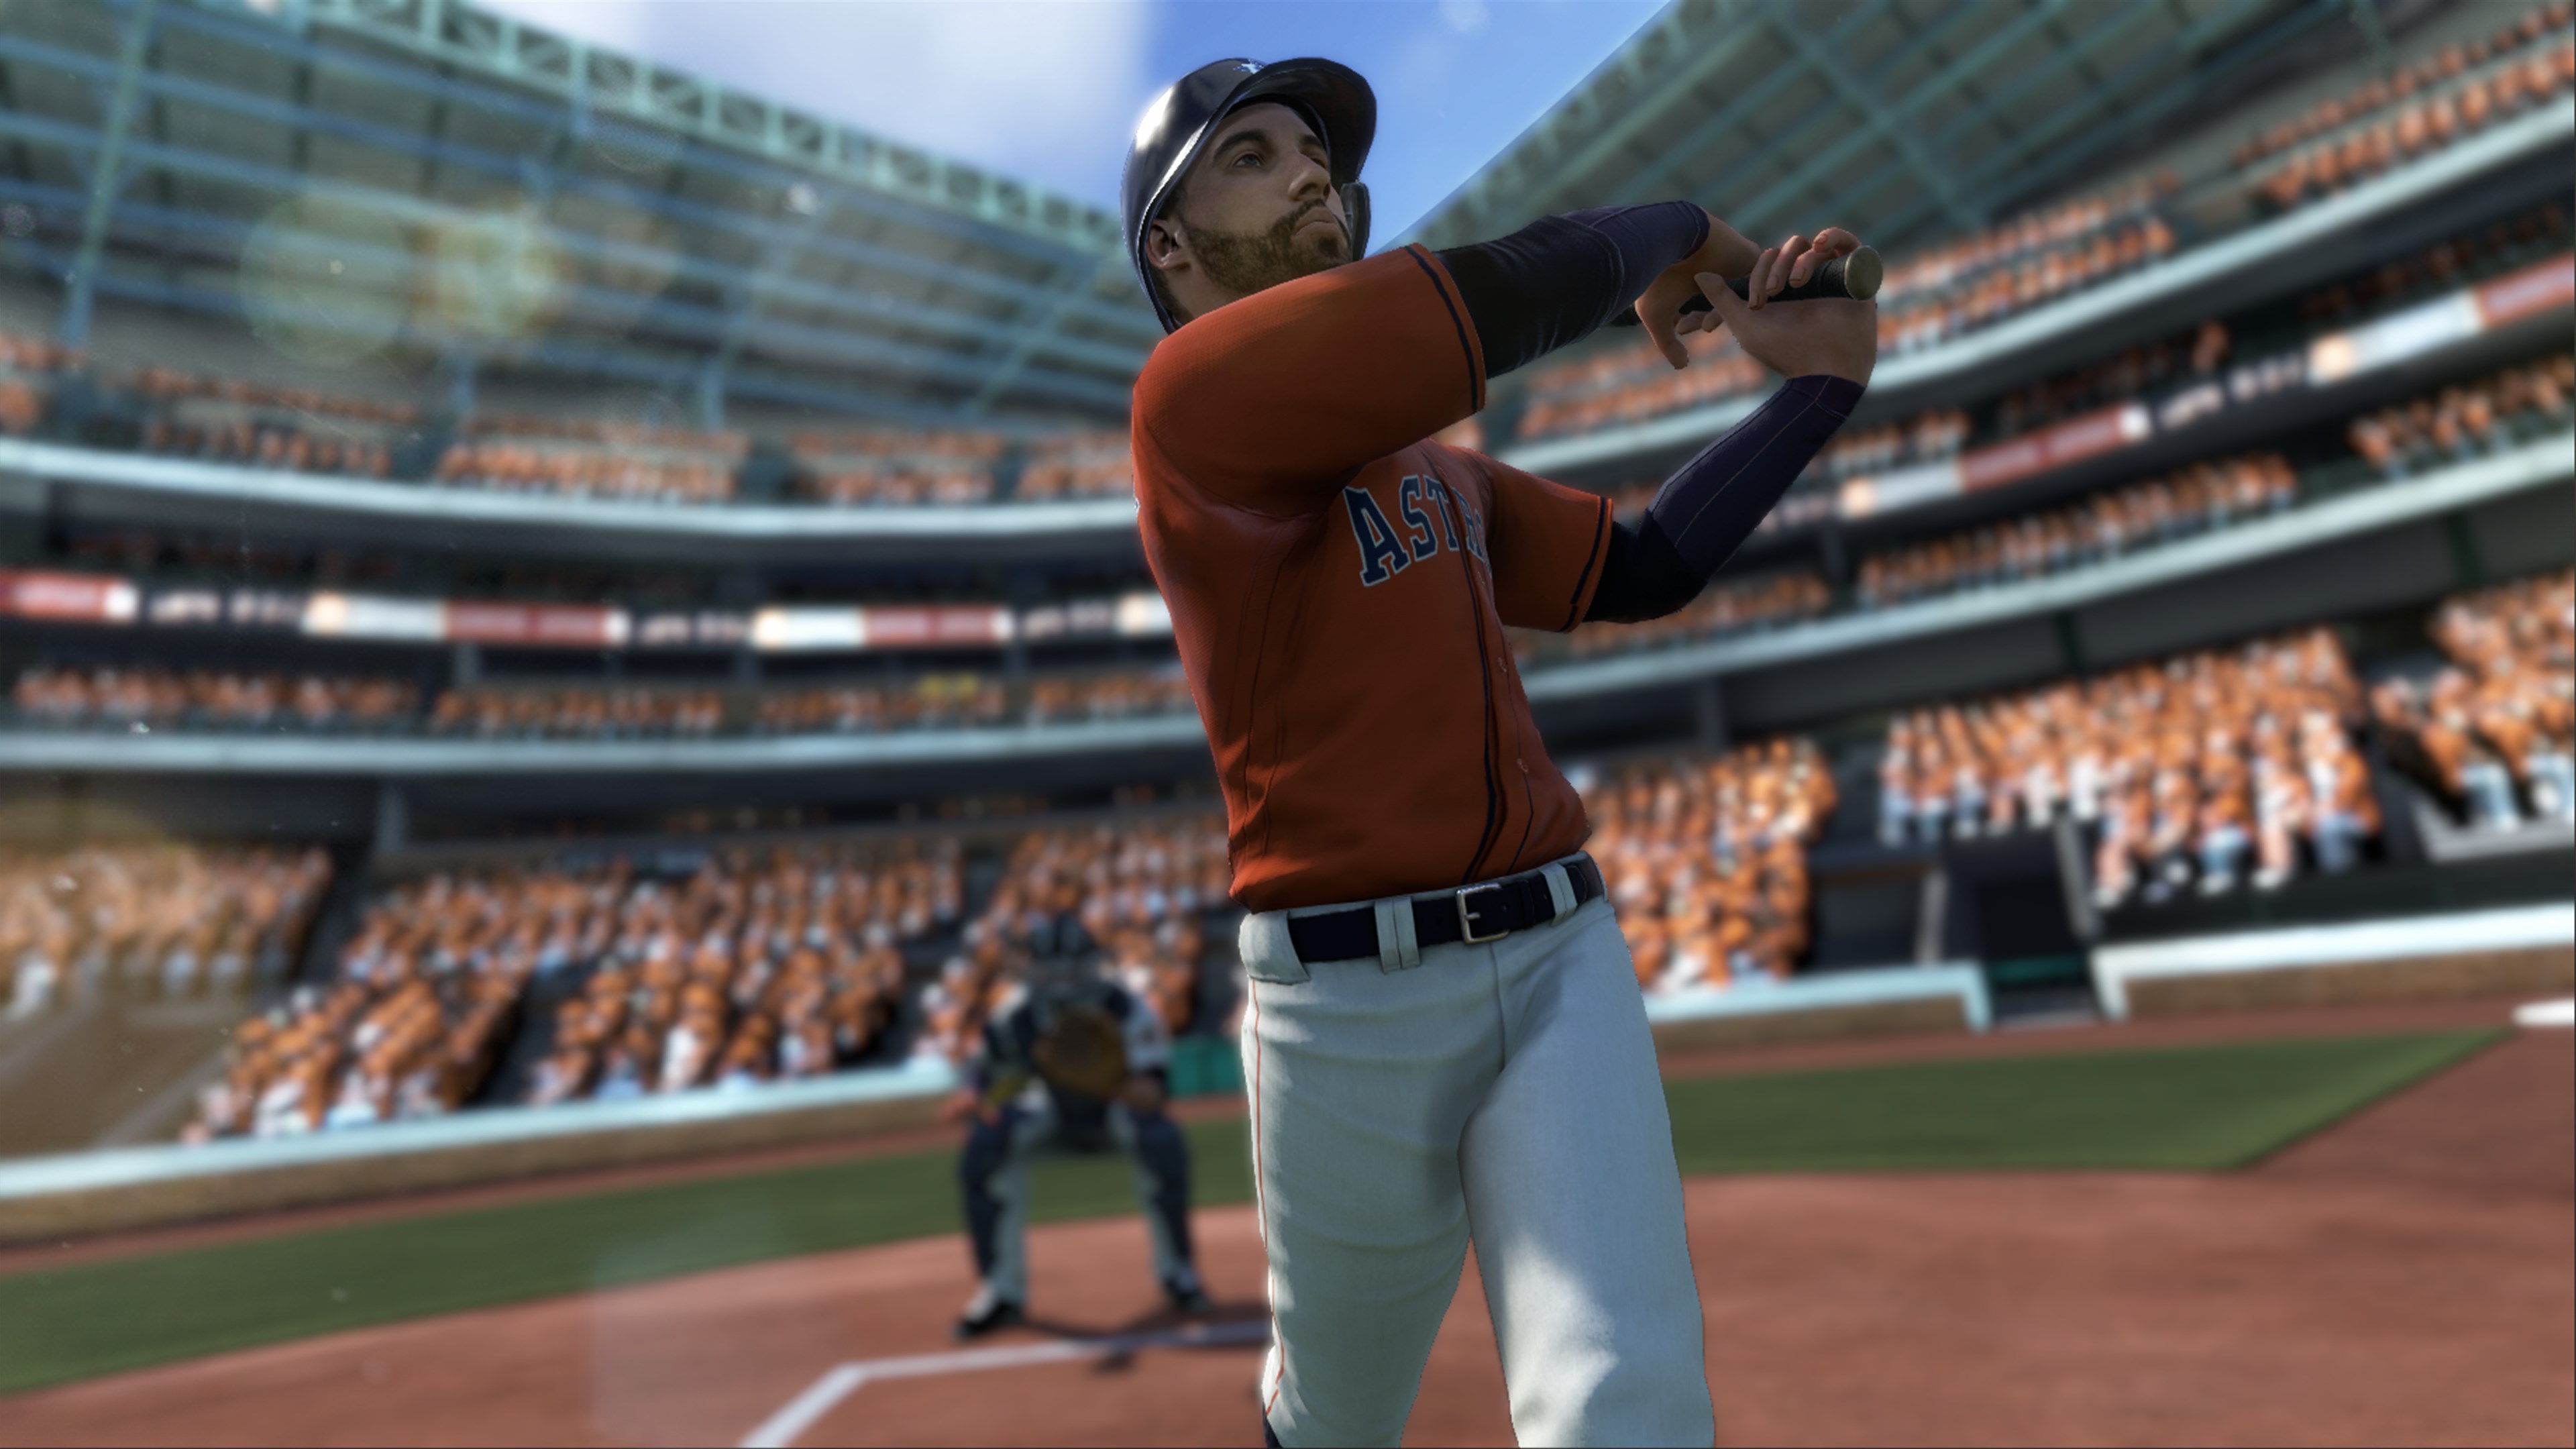 R.B.I. Baseball 18 XBOX One / Xbox Series X|S CD Key [USD 56.49]